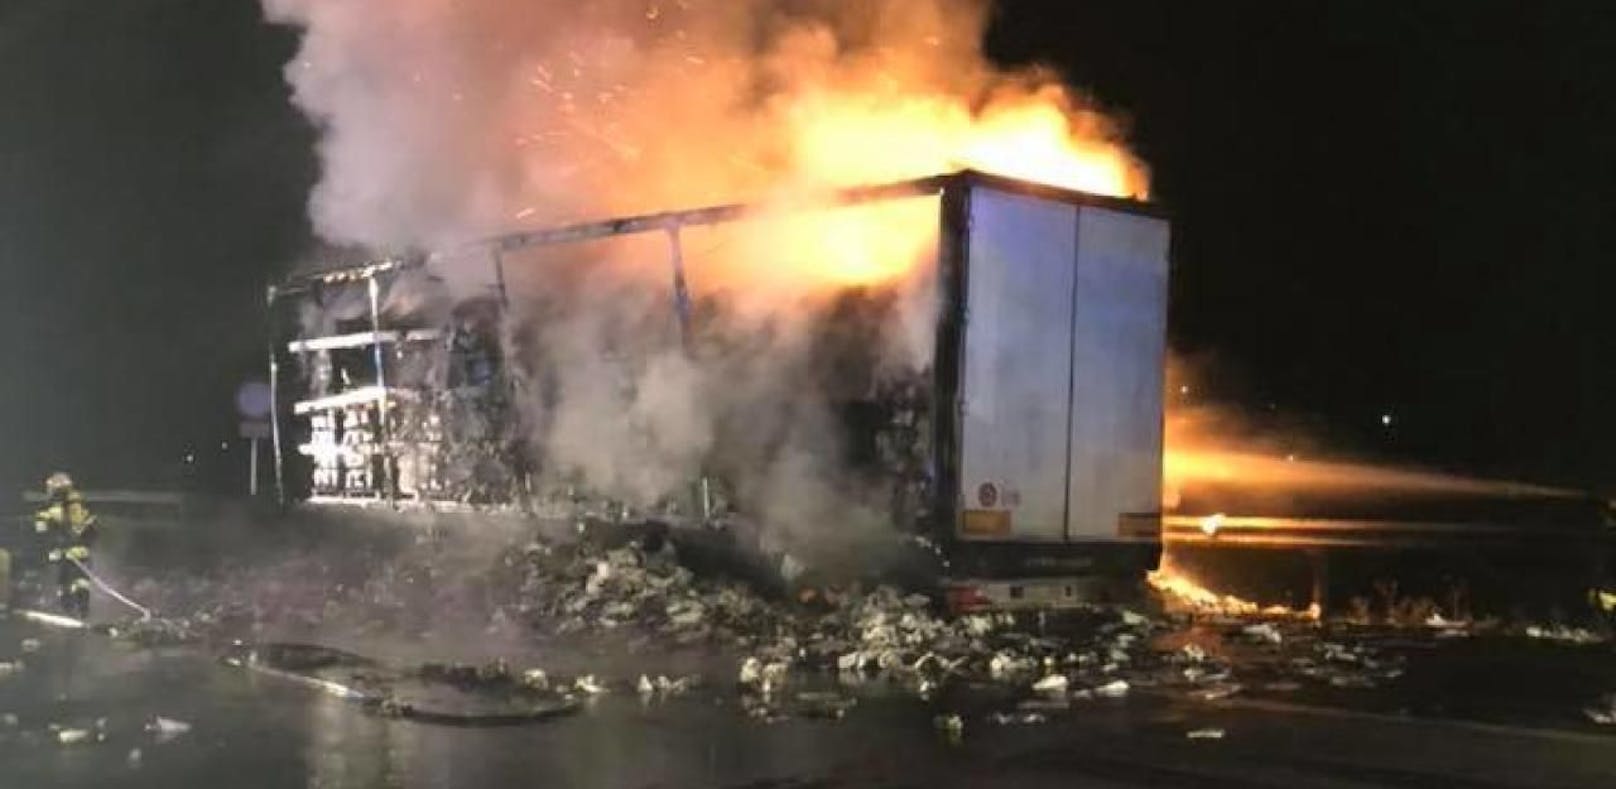 Papier-Laster brannte nach Reifenplatzer aus